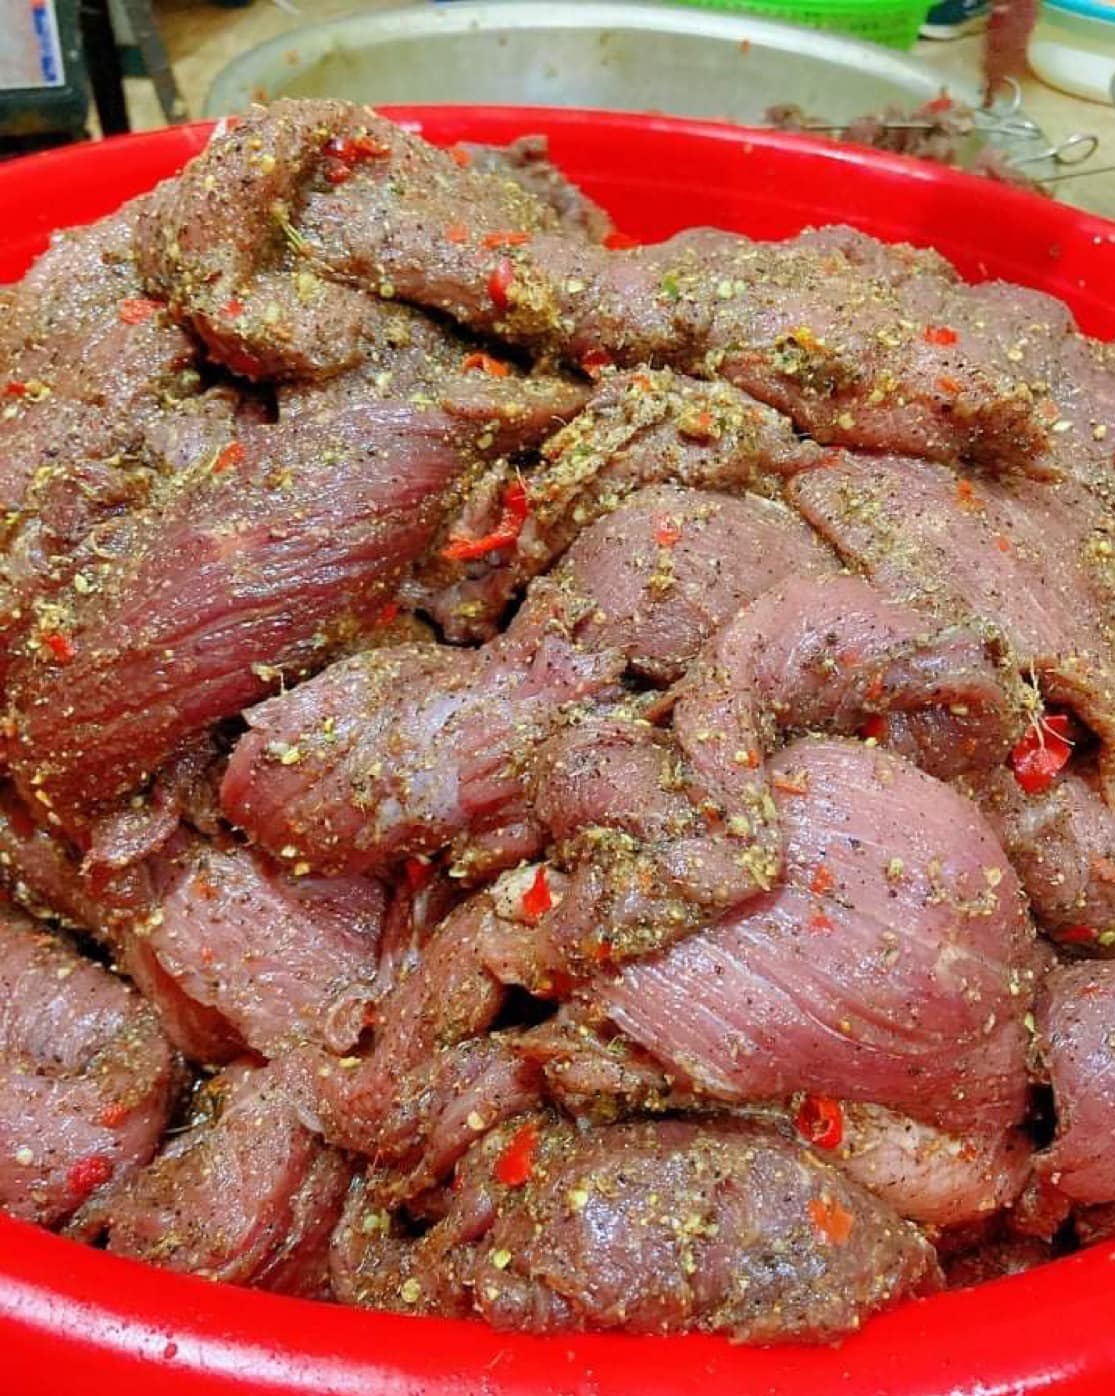 Thịt trâu được tẩm ướp theo những công thức riêng của người dân tộc vùng núi Tây Bắc